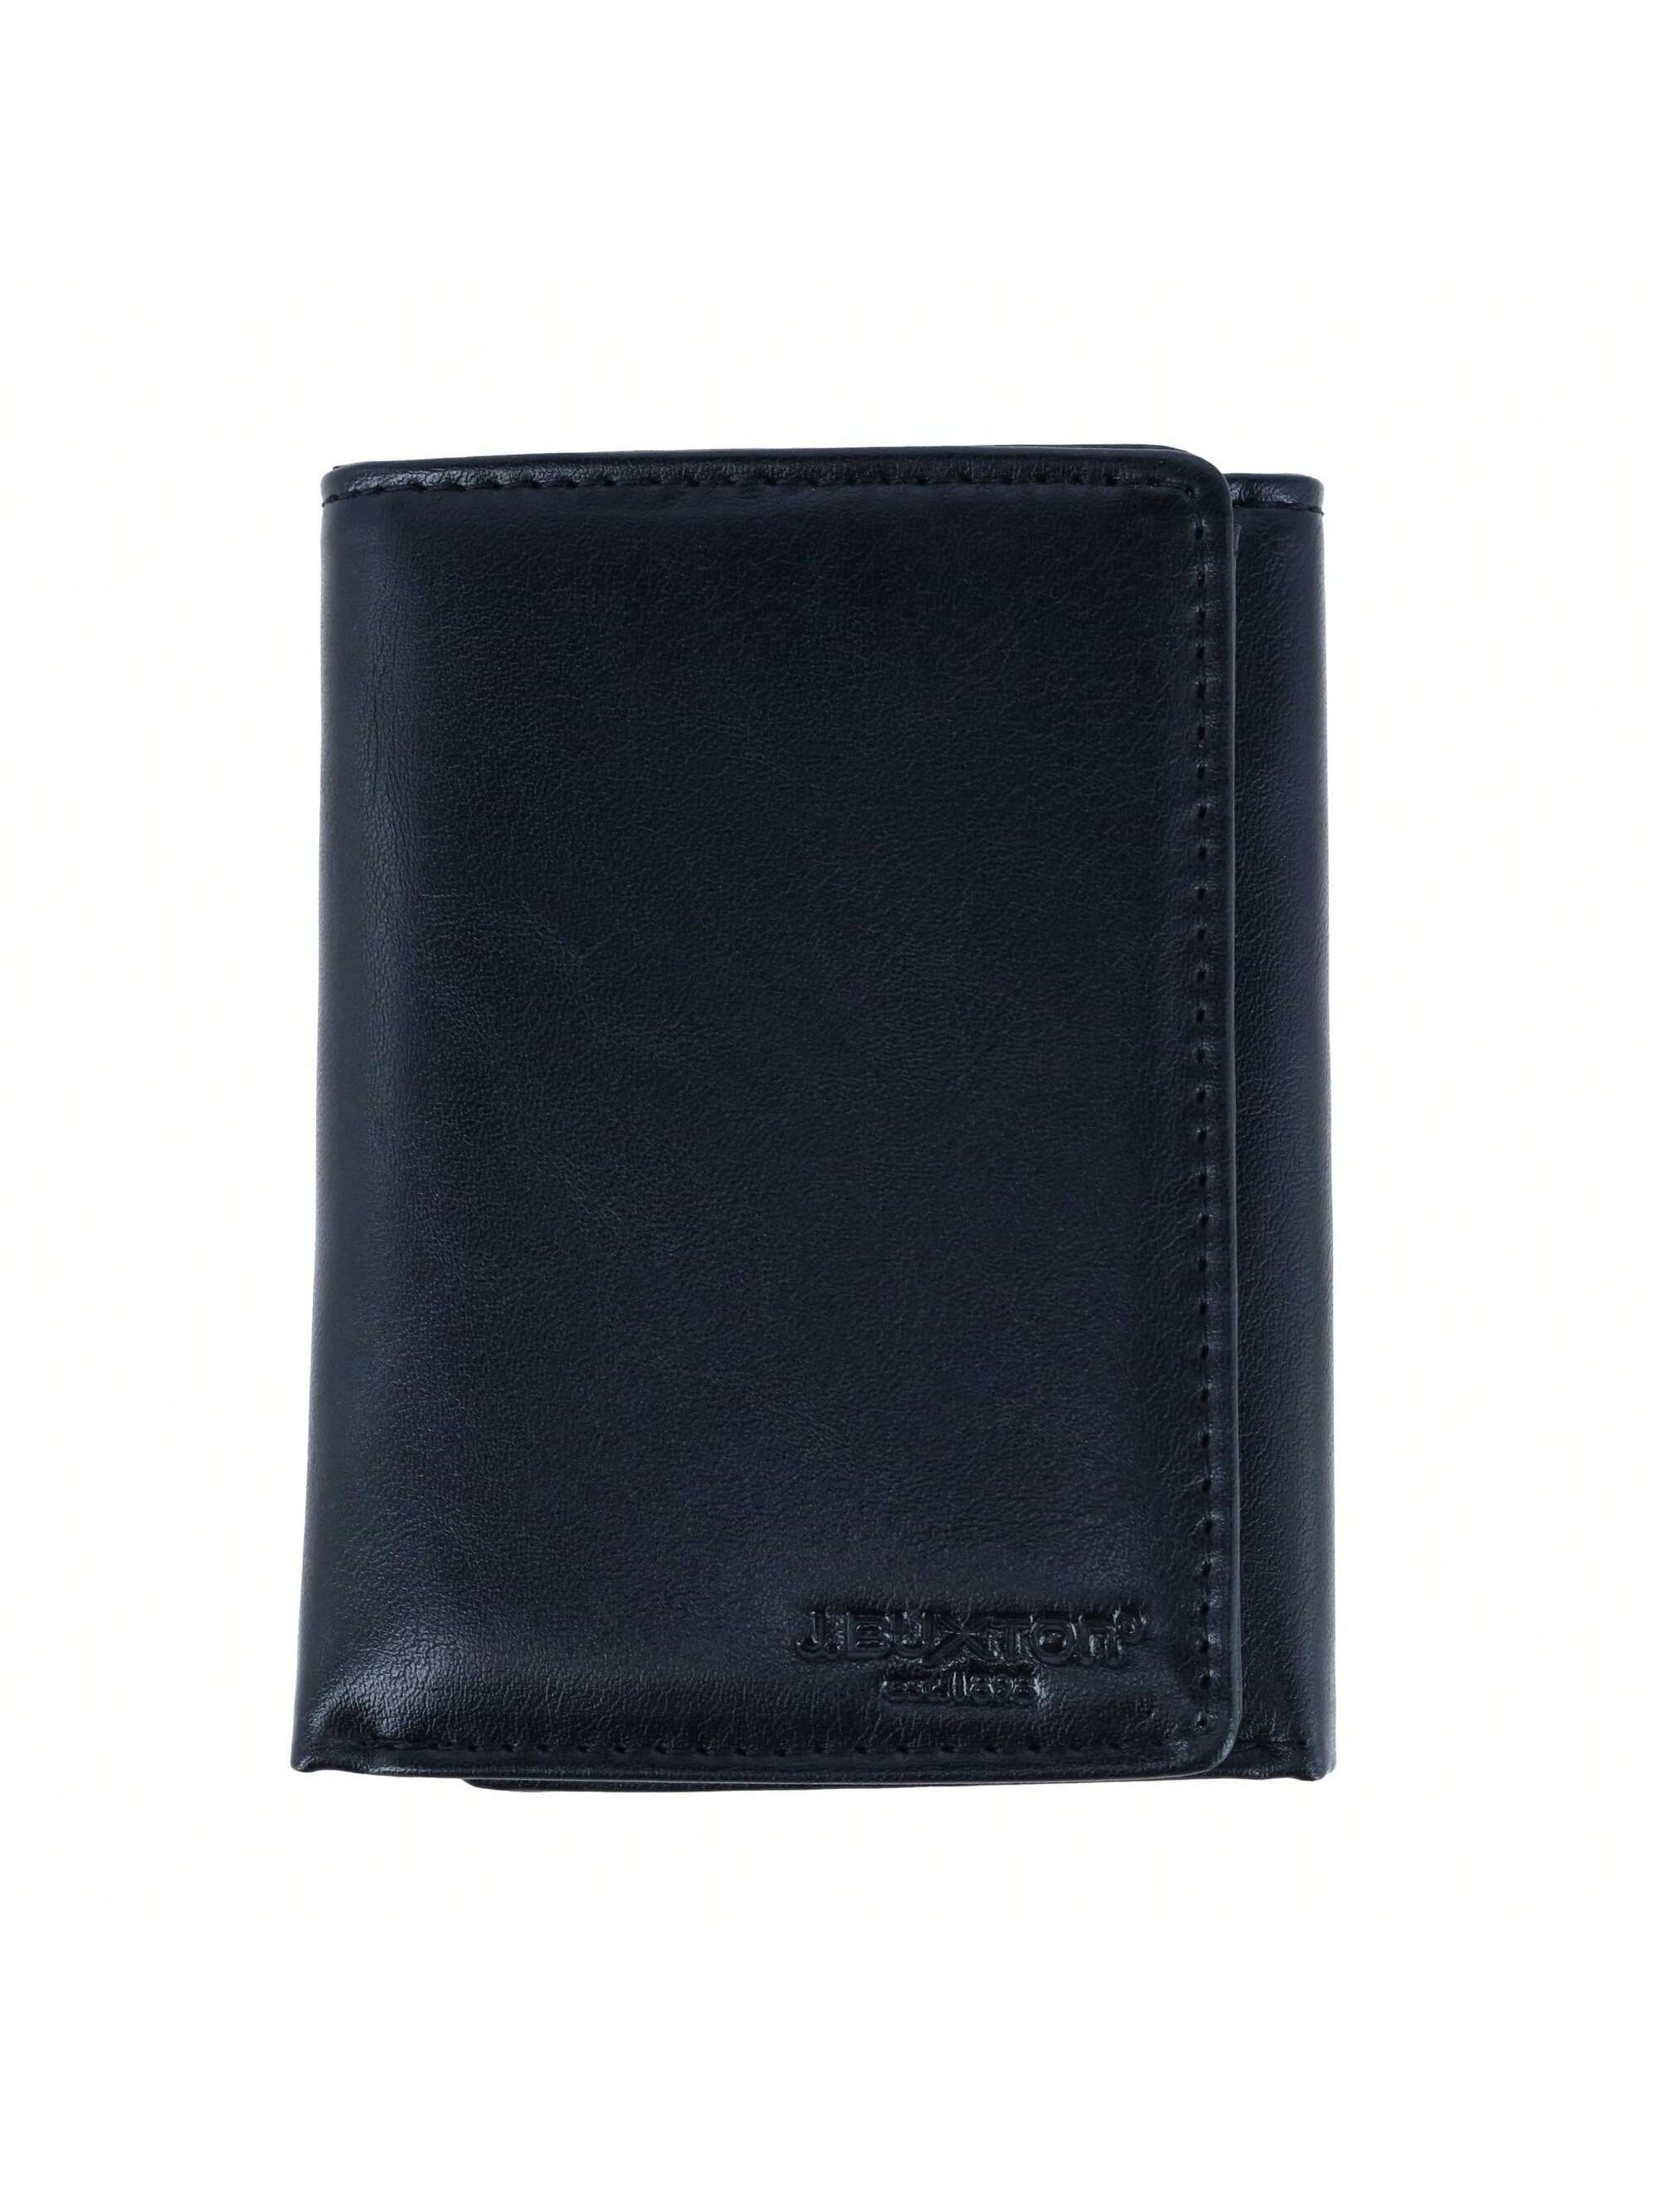 Мужской кошелек Buxton тройного сложения из веганской кожи с RFID-метками, черный кошелек тройного сложения из мягкой кожи giani bernini